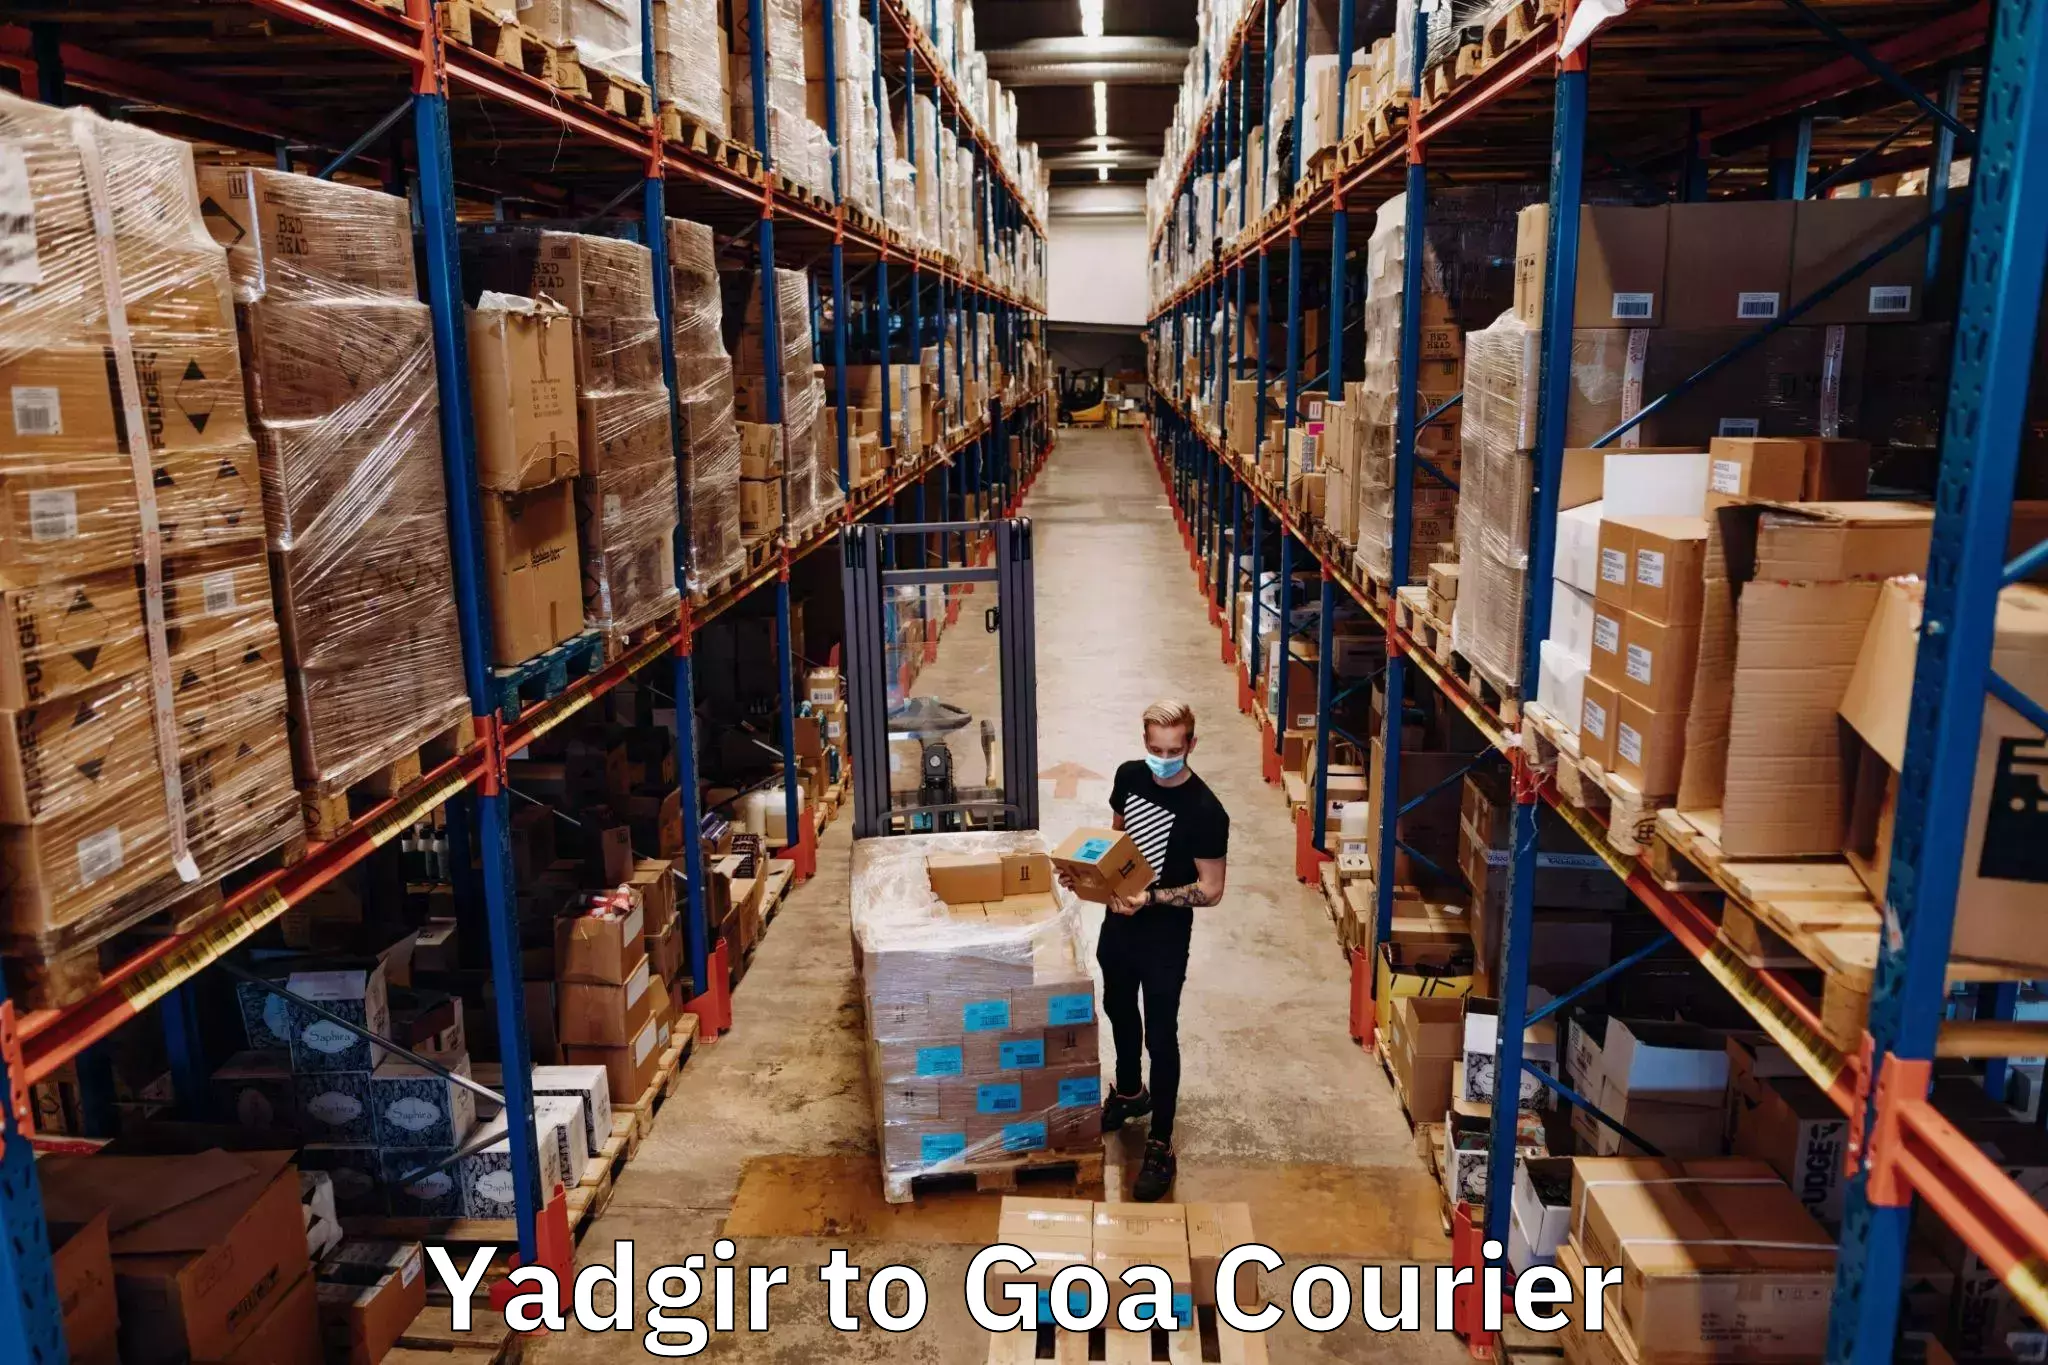 Comprehensive shipping network Yadgir to IIT Goa